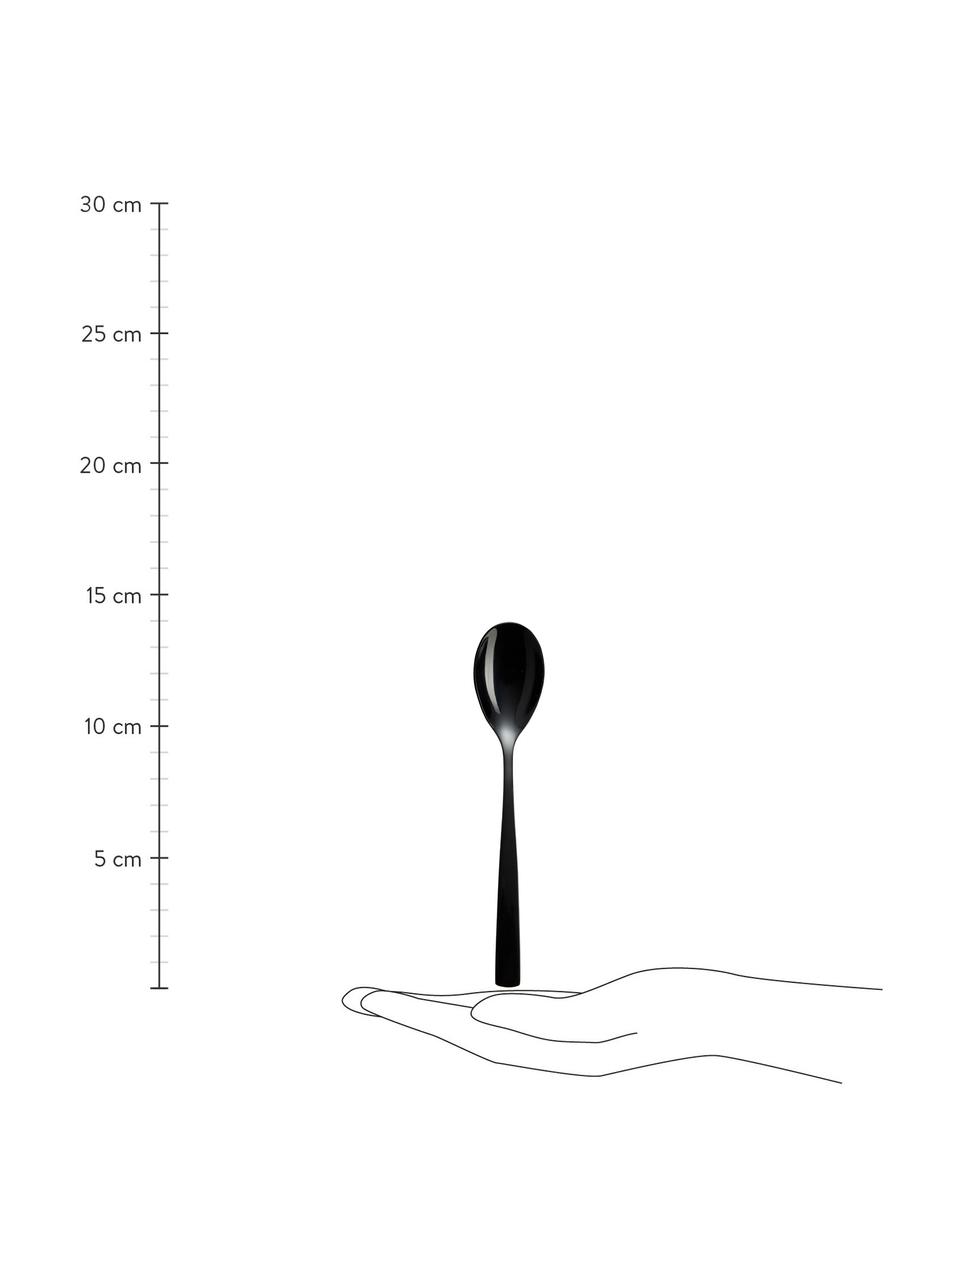 Teelöffel Shinko in Schwarz glänzend, 6 Stück, Edelstahl
Das Besteck ist aus Edelstahl gefertigt. Somit ist es langlebig, rostet nicht und ist resistent gegen Bakterien., Schwarz, hochglanzpoliert, L 14 cm